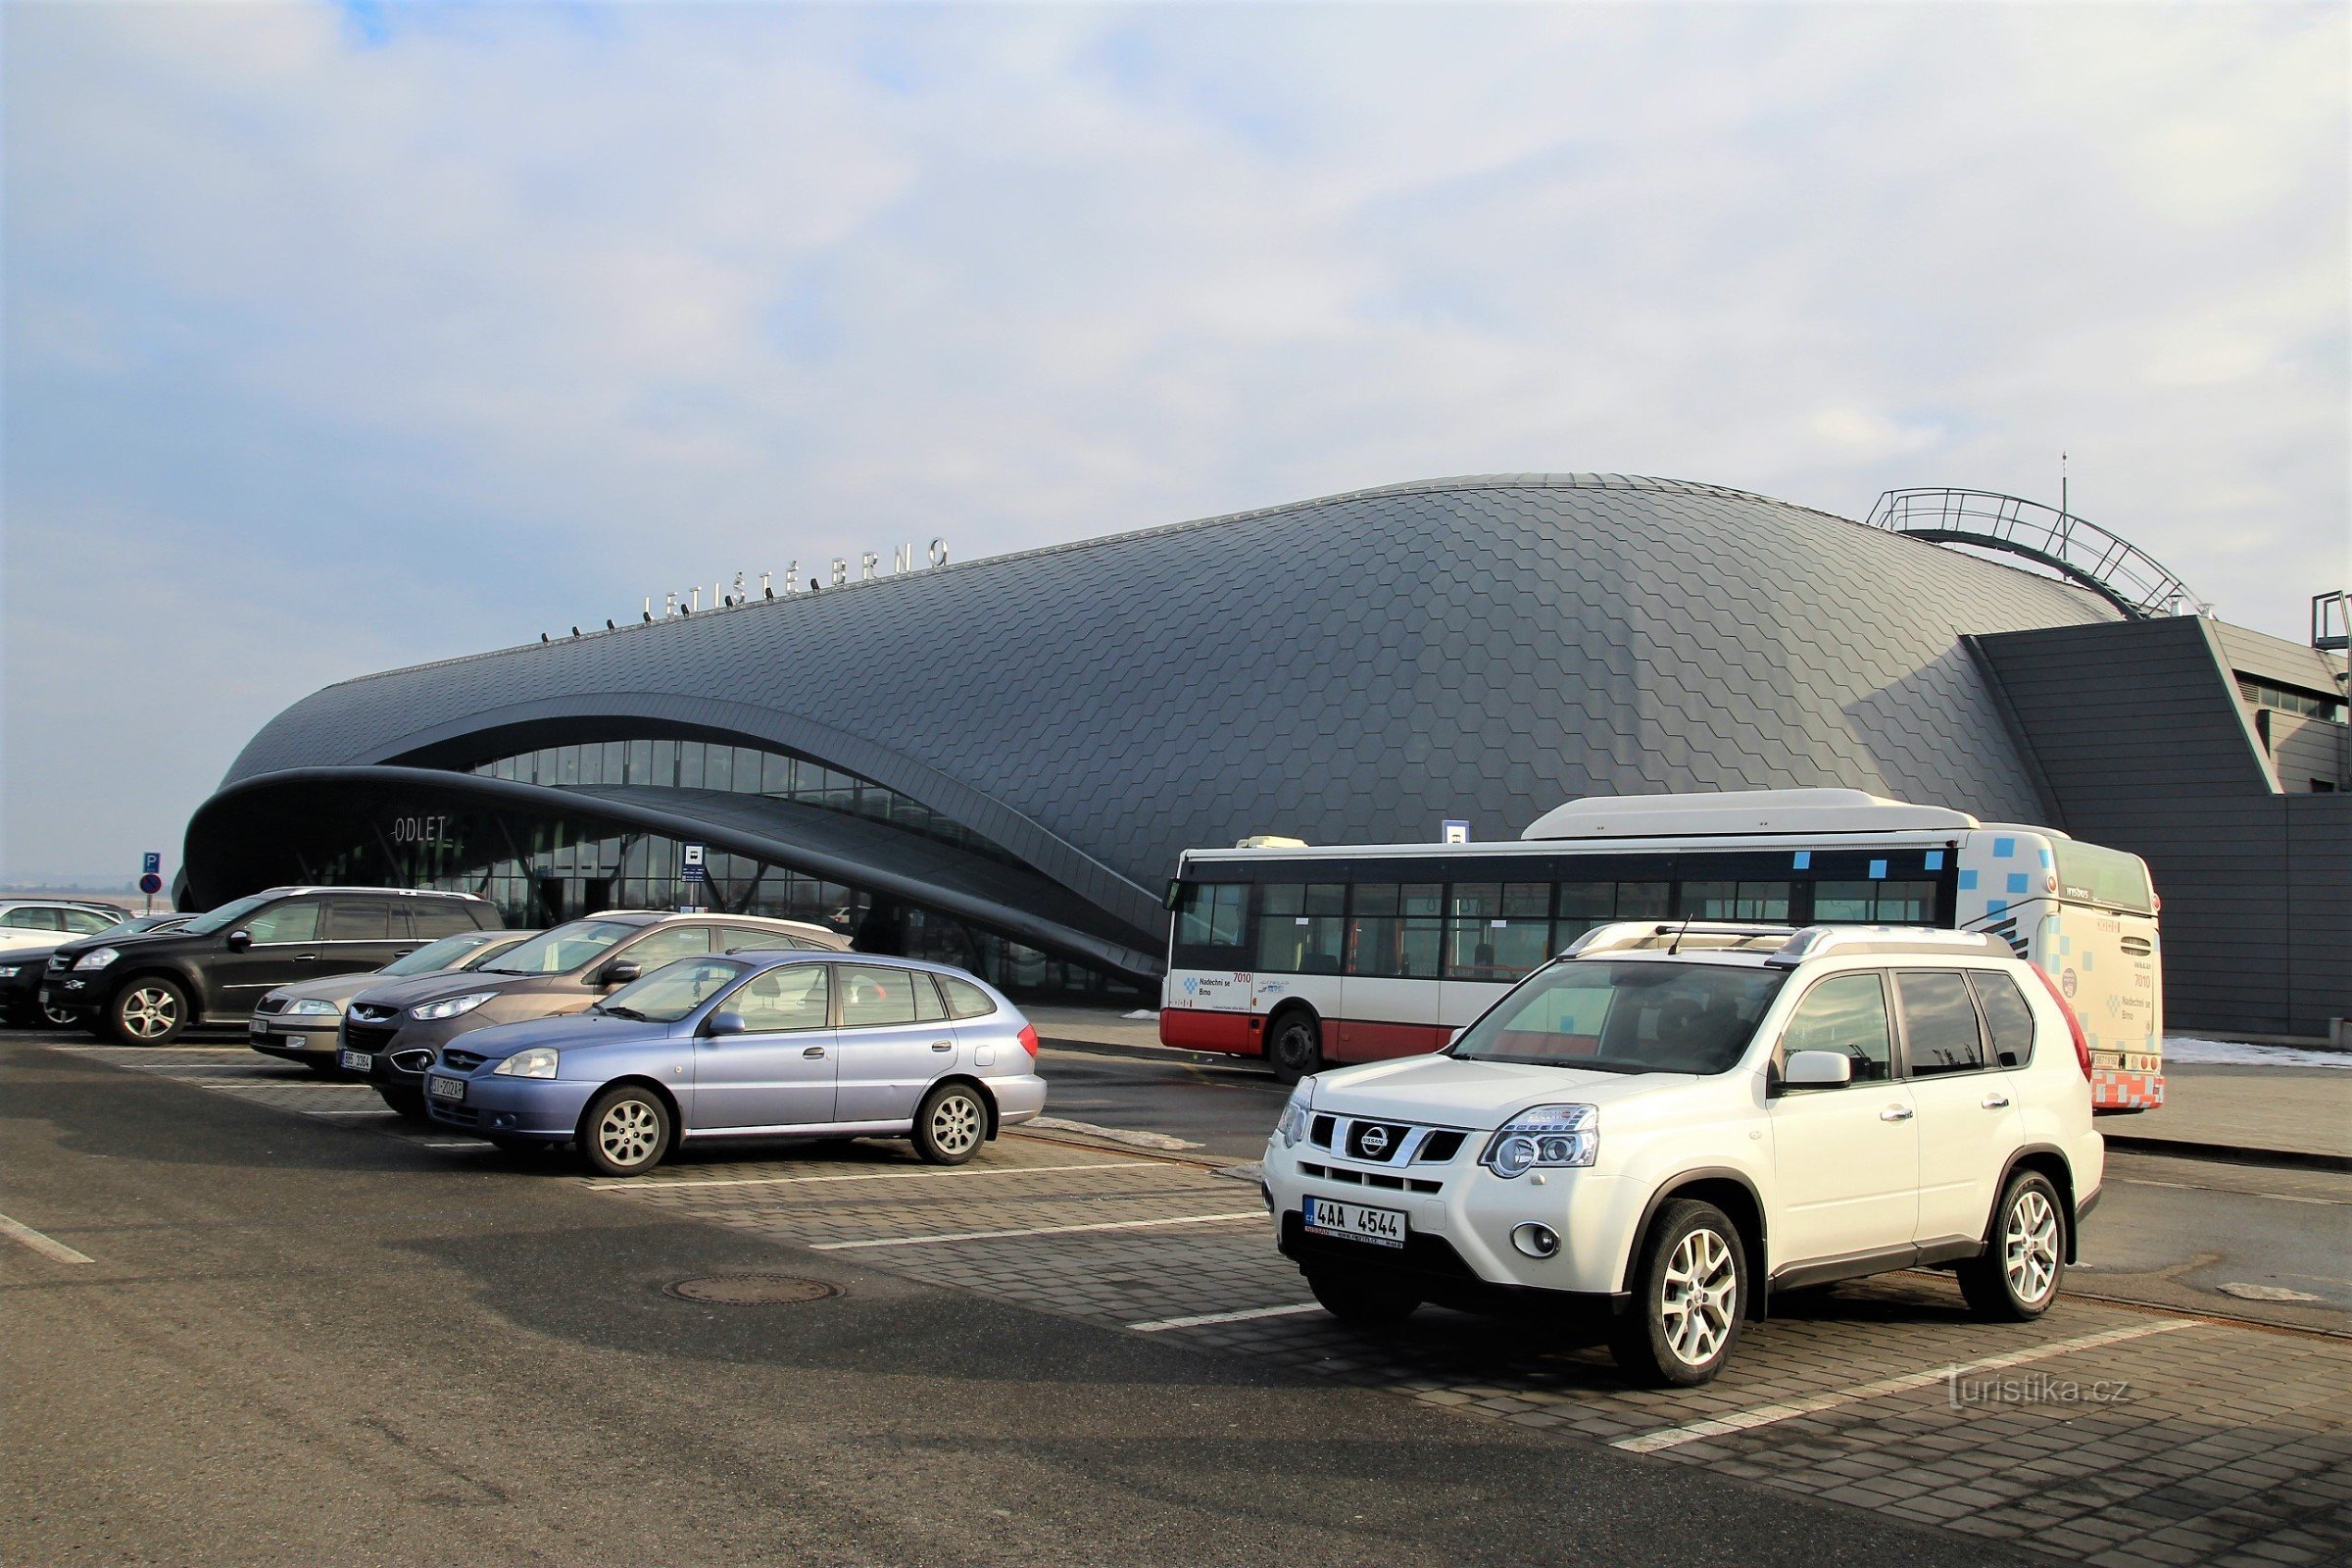 Sảnh khởi hành của sân bay Turan